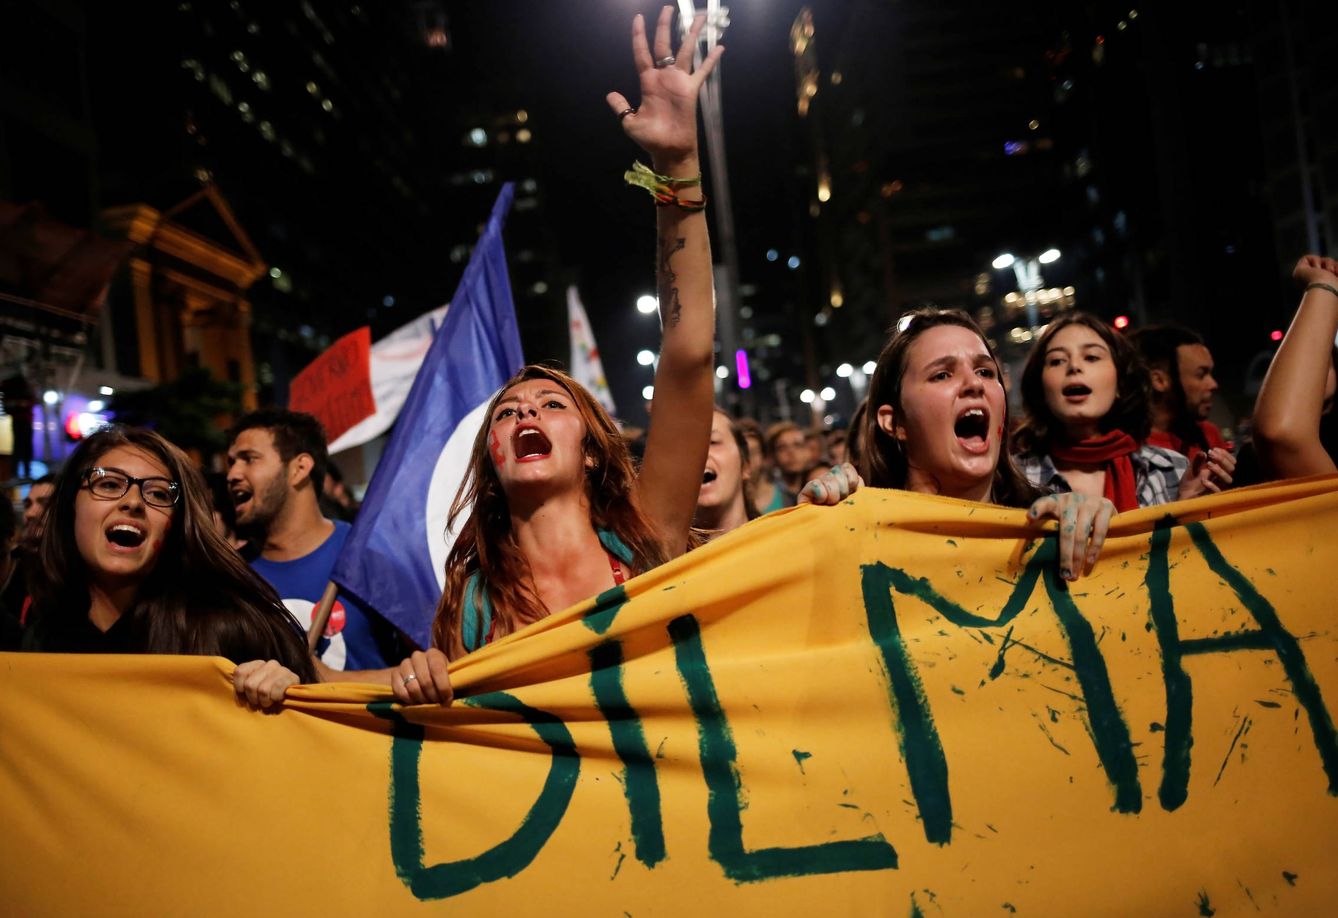 Foto: Brasileñas gritan consignas contra el presidente Temer y a favor de Dilma Rousseff durante una protesta en Sao Paulo, el 17 de mayo de 2016. (Reuters)